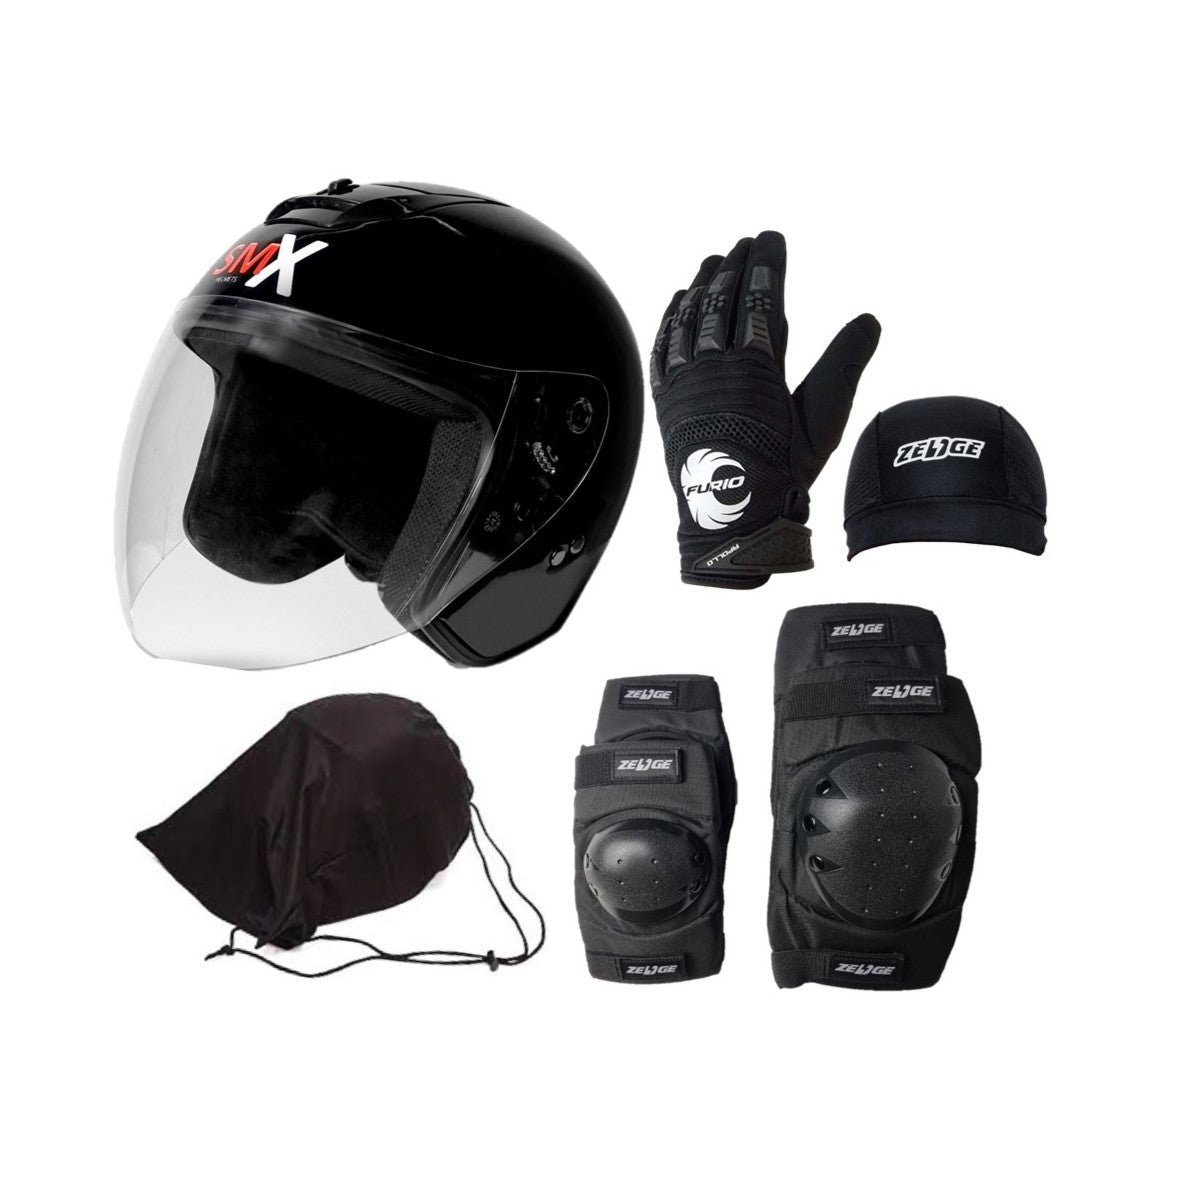 Motorcycle Student Learner Basic Bundle (1 Helmet + 1 Glove + 1 Elbow Knee Guard + 1 Head Cover + 1 Helmet Bag)